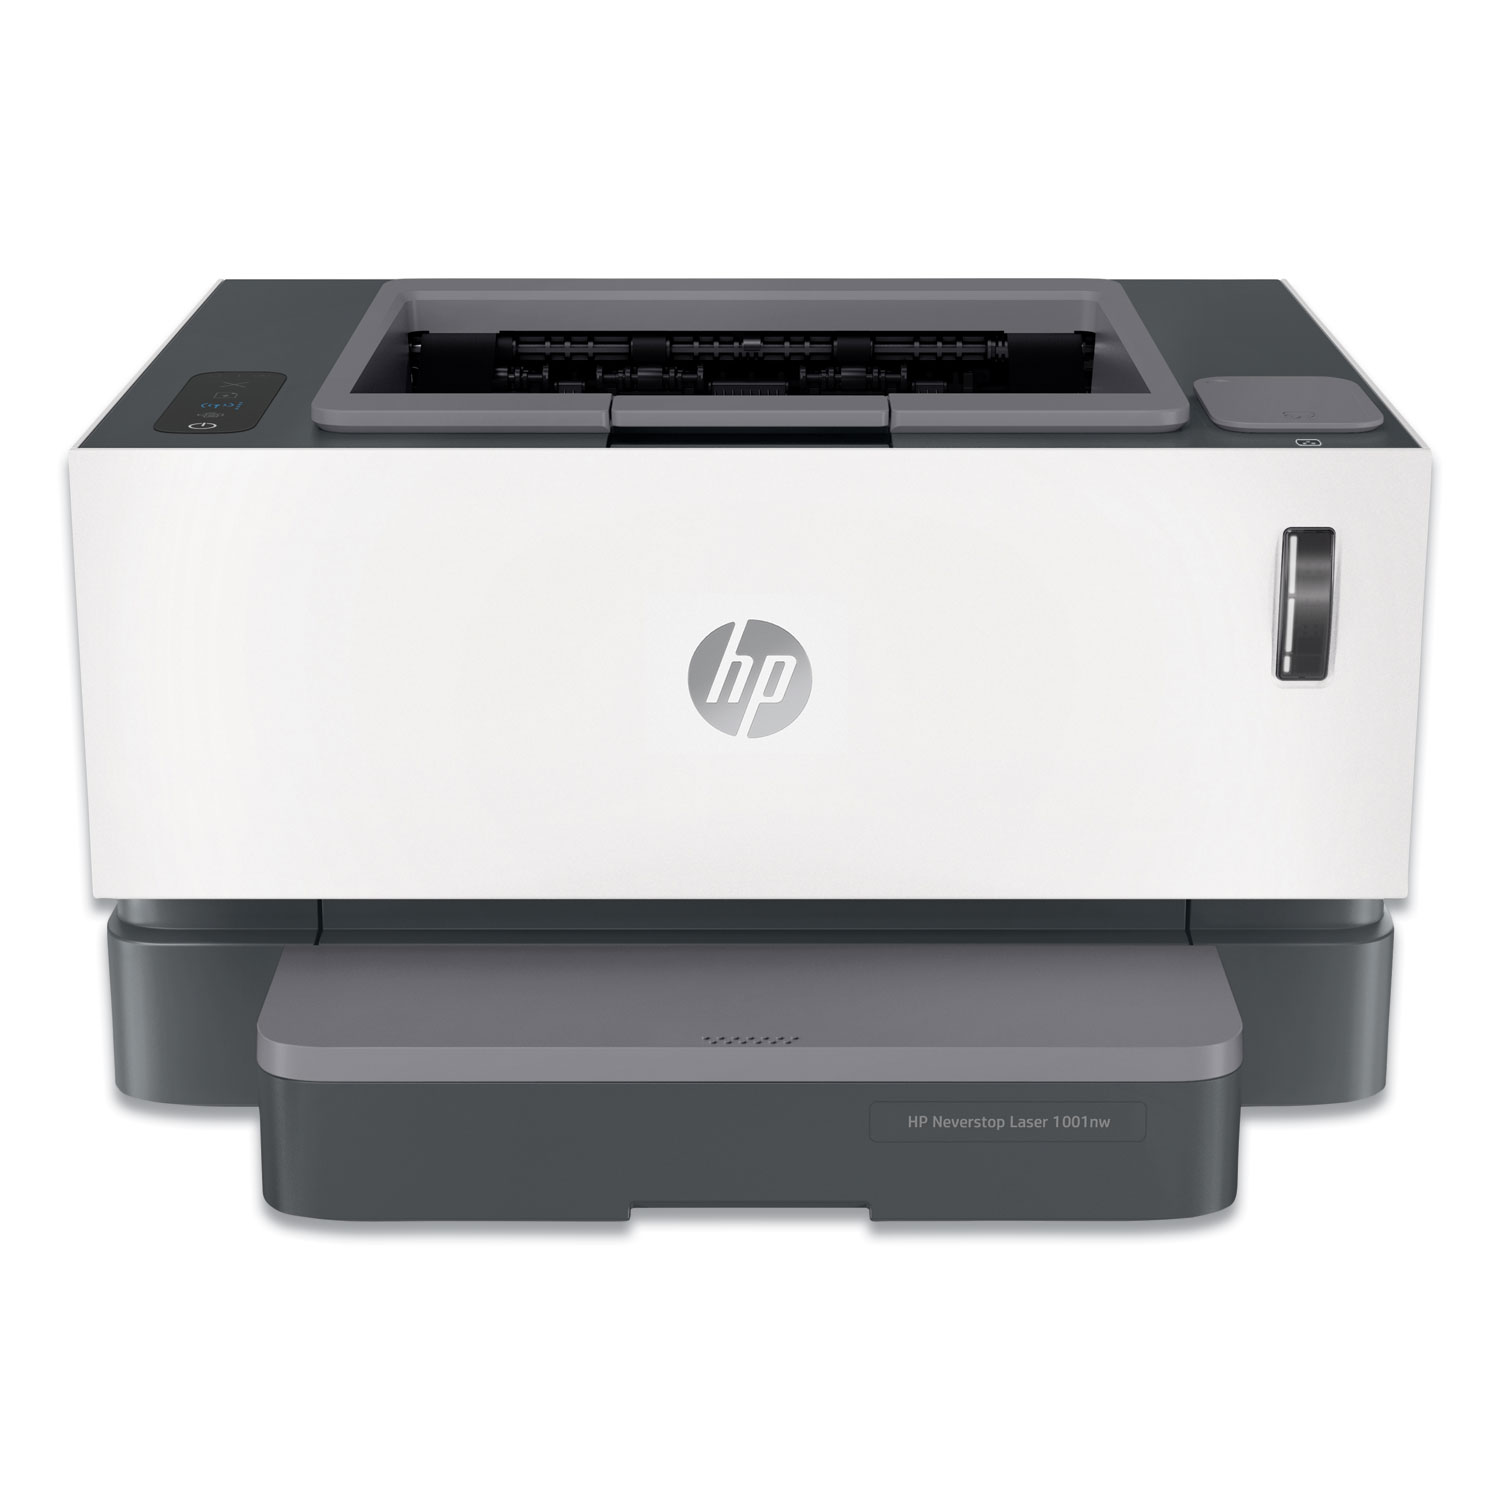  HP 5HG80A#BGJ Neverstop Laser 1001nw Wireless Laser Printer (HEW5HG80A) 